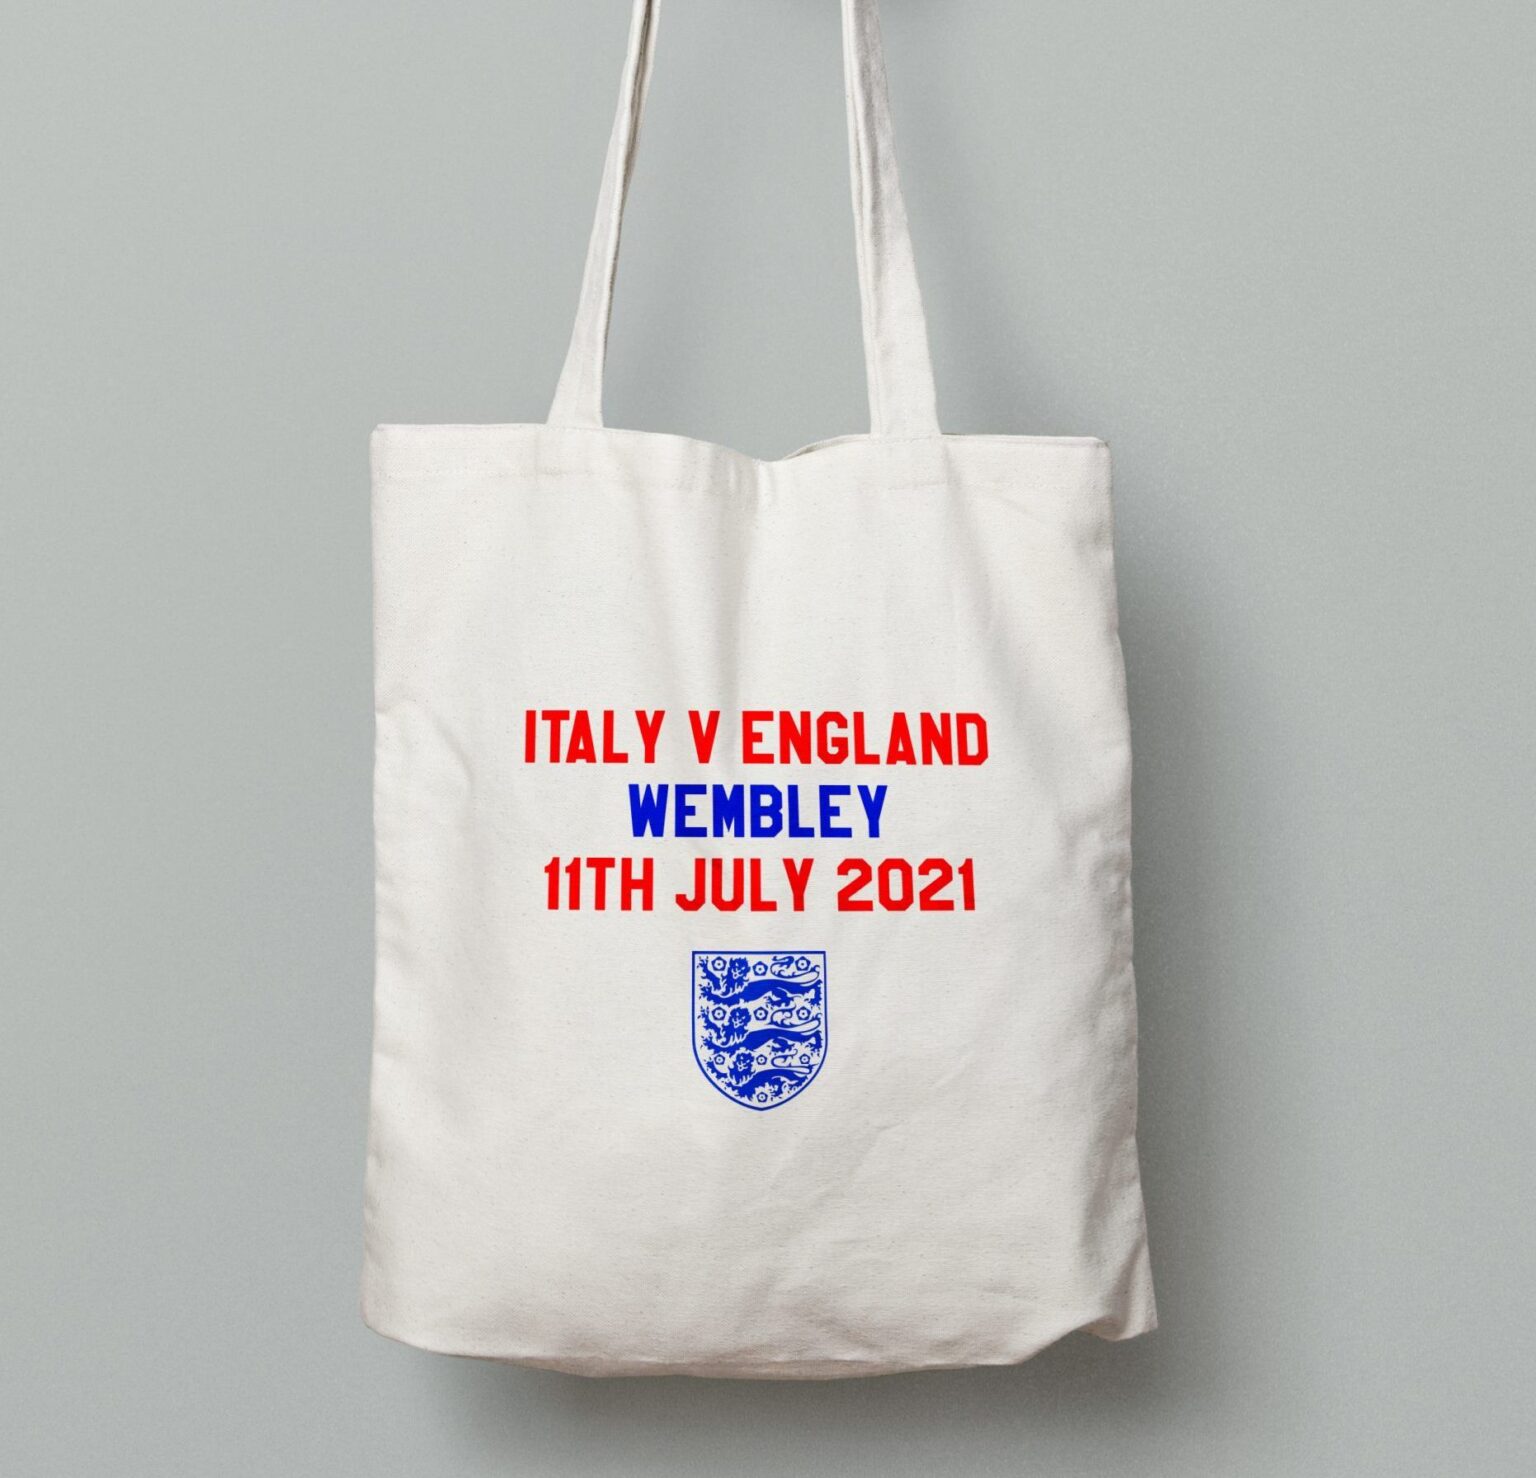 Italy v England tote